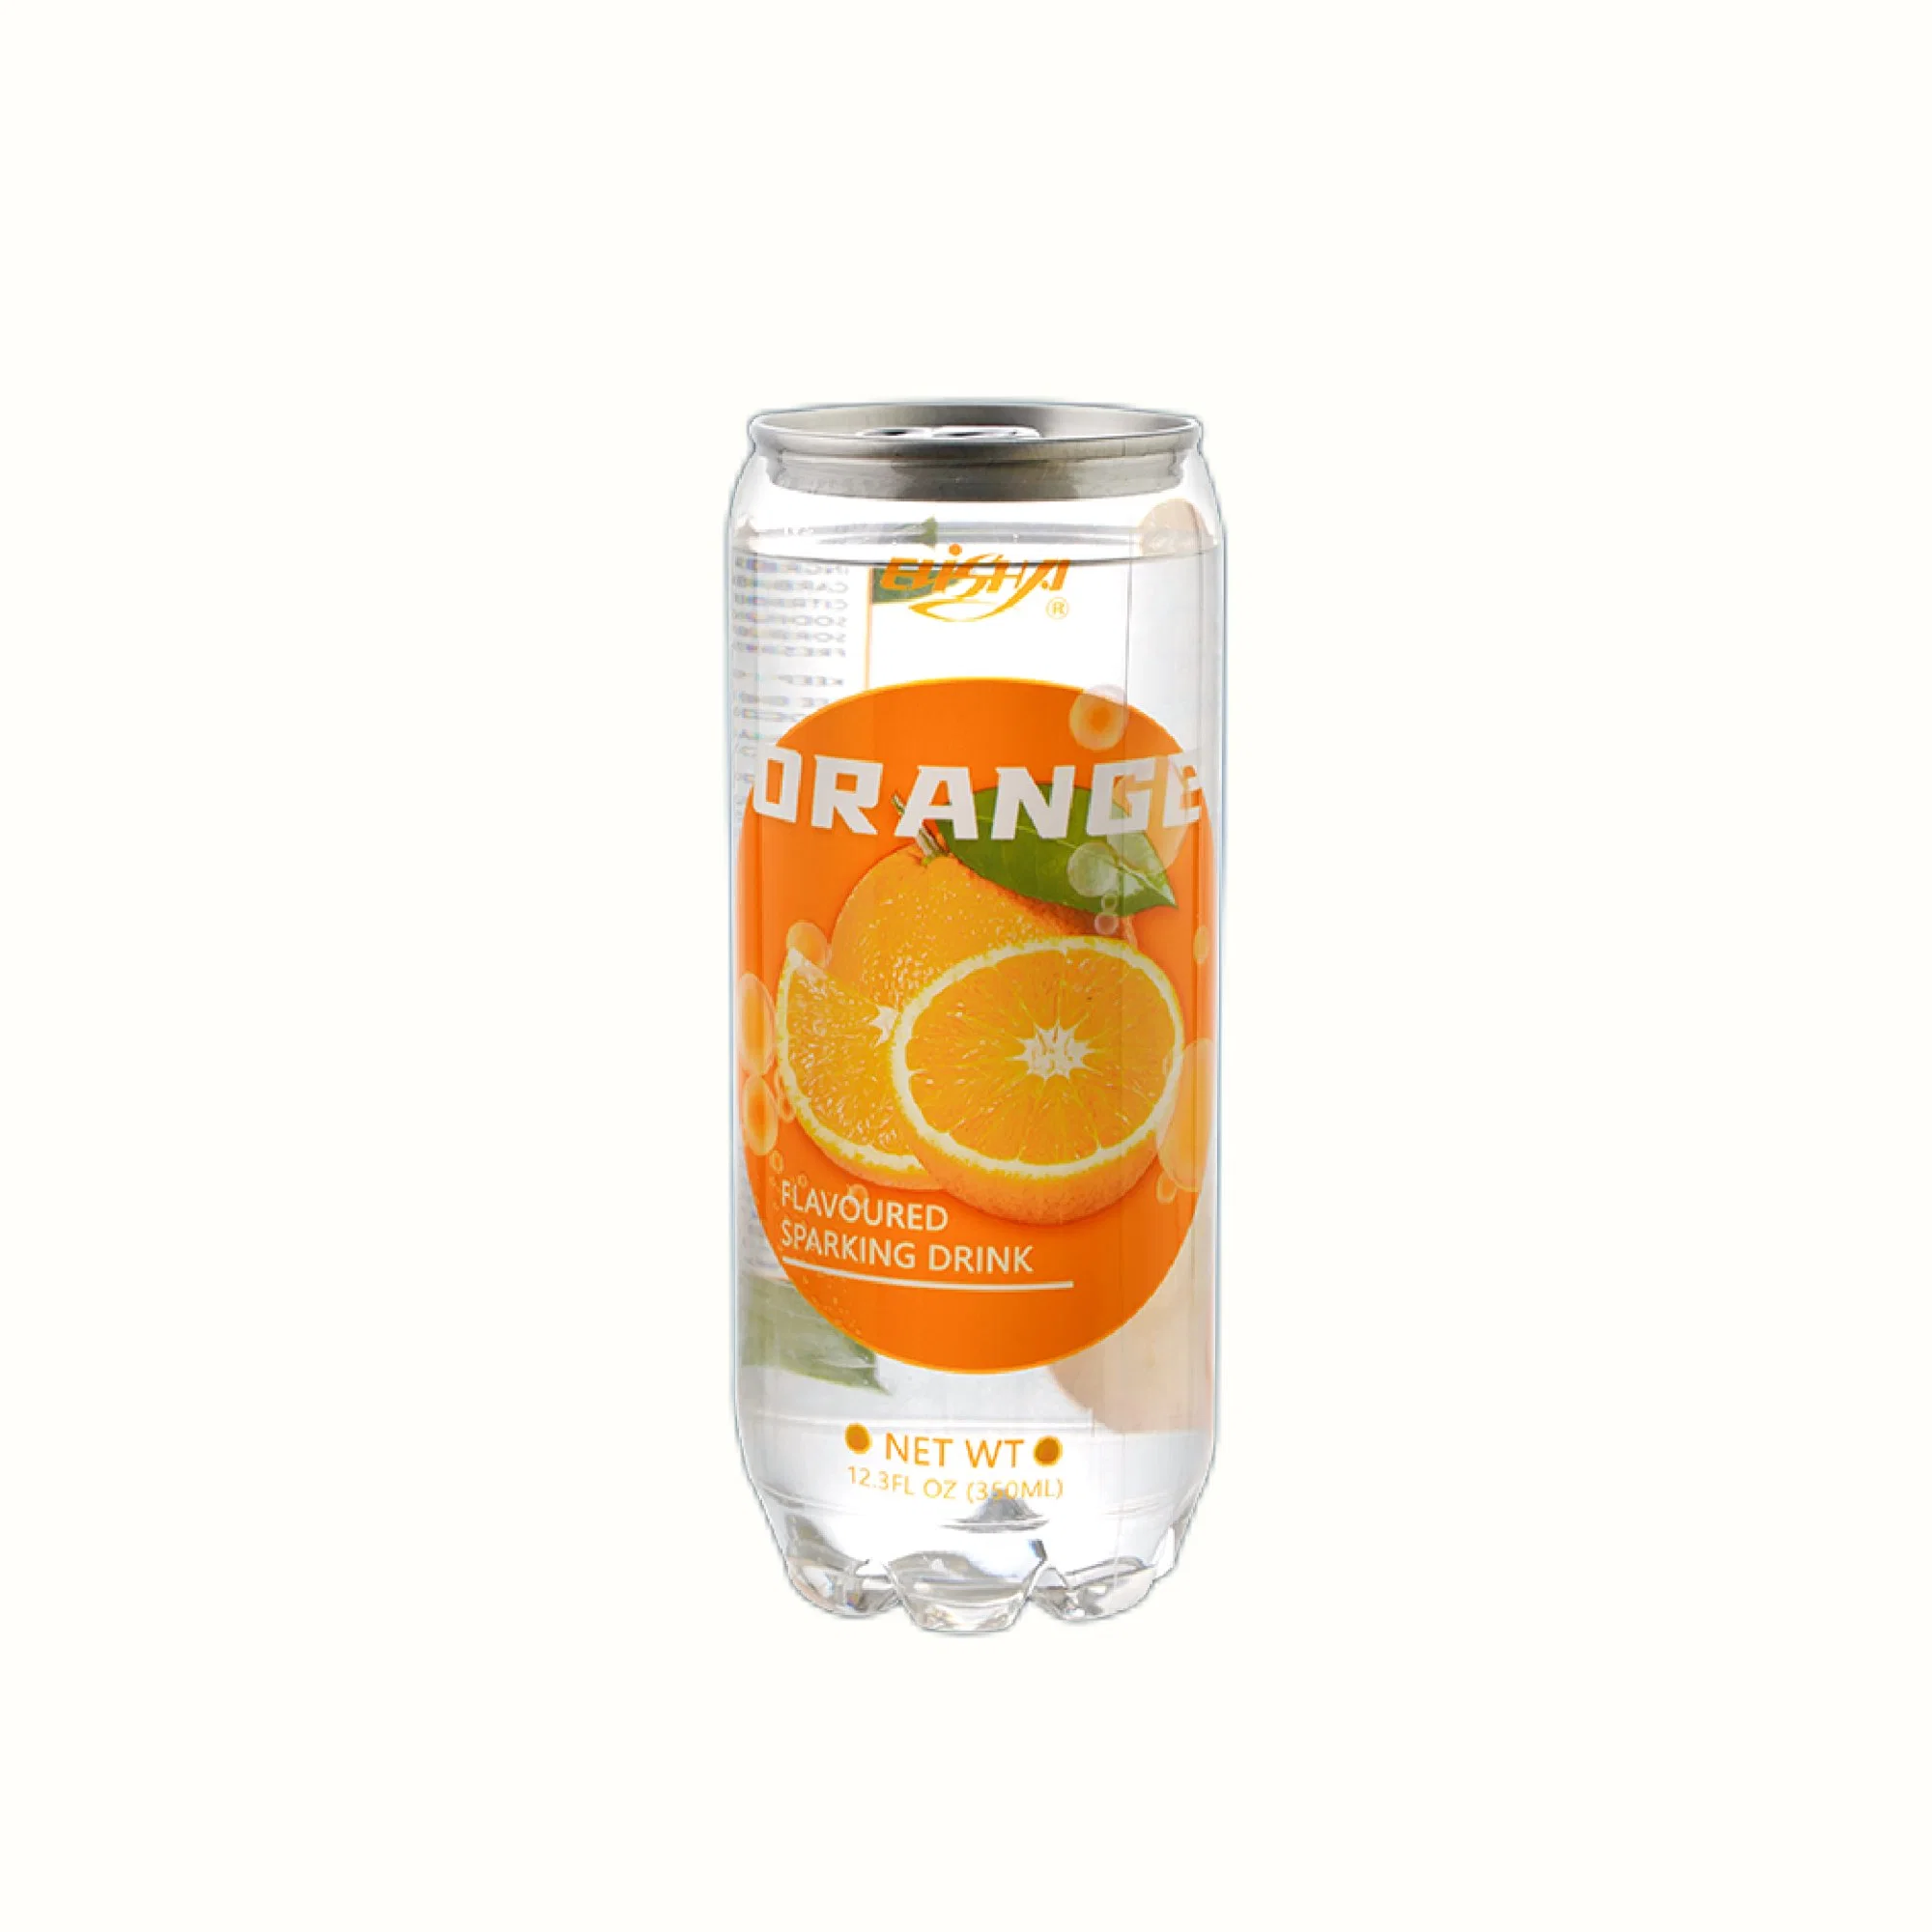 350ml lata de agua carbonatada con sabor anaranjado - Personalizar Etiqueta